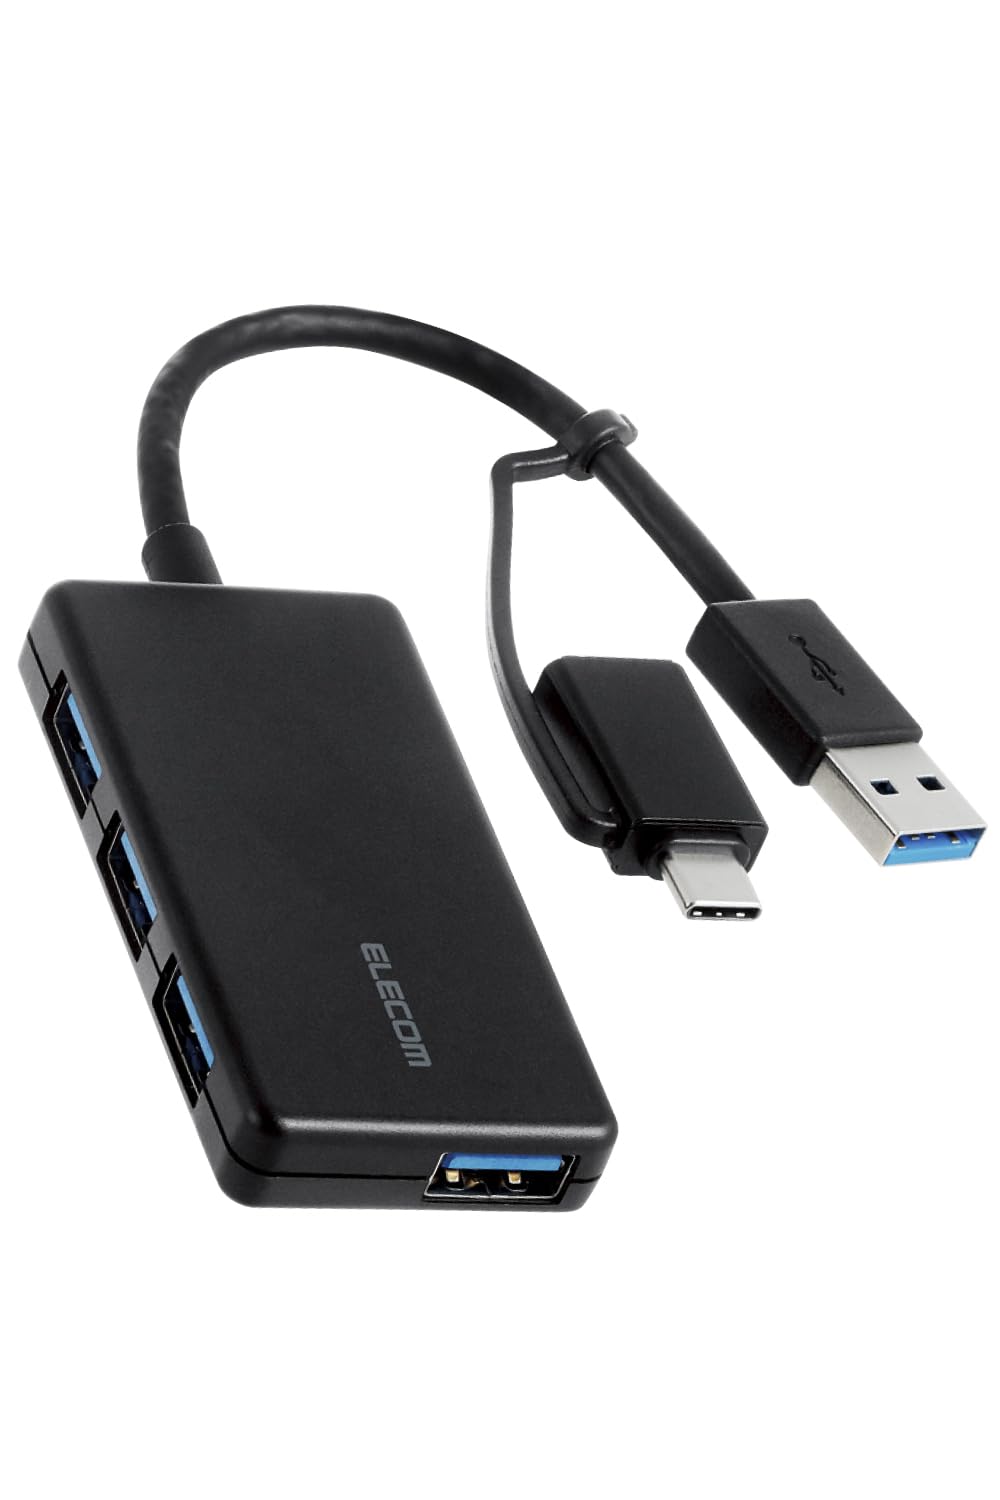 エレコム USBハブ USBHUB3.0 Type-C変換アダプタ付 コンパクト 4ポート ブラック U3H-CA4004BBK